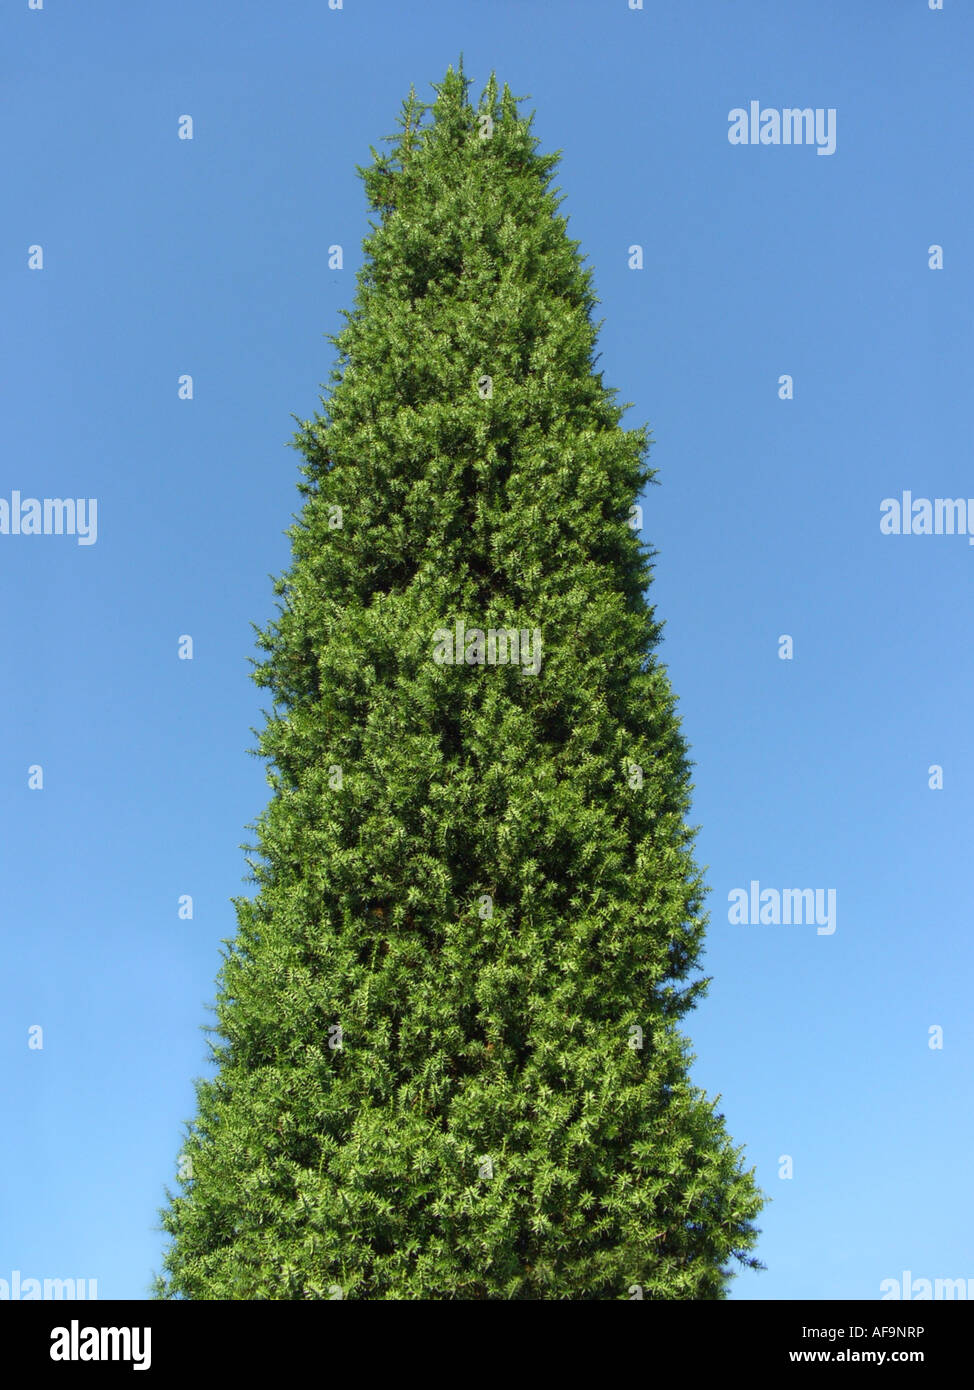 Syrian juniper (Juniperus drupacea), column form Stock Photo